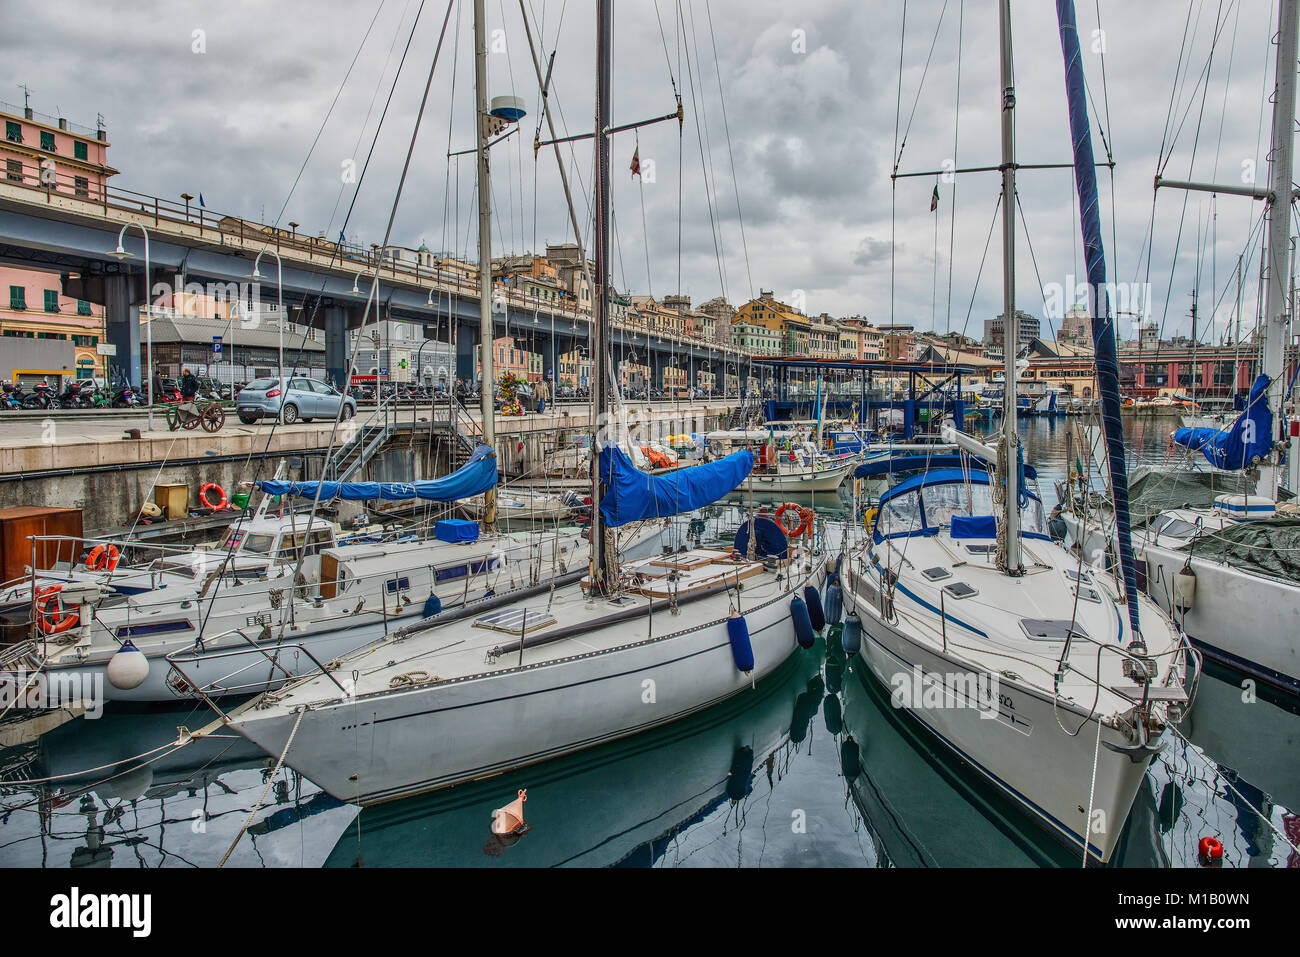 Genoa, Italy - January 29, 2015: Detail of Genoa in Italy with boats and expressways Stock Photo